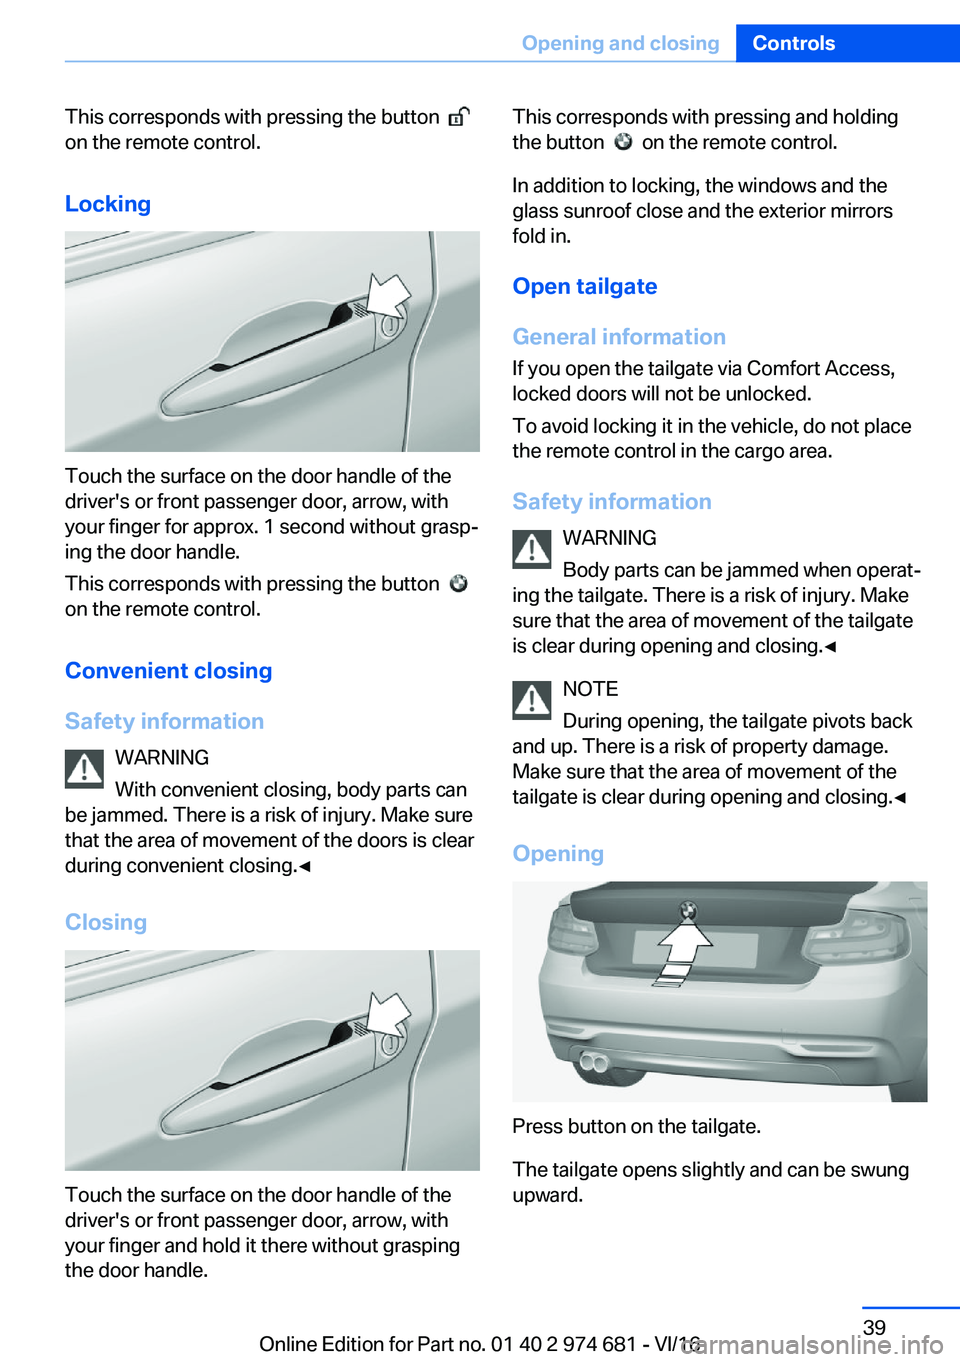 BMW M2 2017 Owners Guide �T�h�i�s� �c�o�r�r�e�s�p�o�n�d�s� �w�i�t�h� �p�r�e�s�s�i�n�g� �t�h�e� �b�u�t�t�o�n� � � 
�o�n� �t�h�e� �r�e�m�o�t�e� �c�o�n�t�r�o�l�.
�L�o�c�k�i�n�g
�T�o�u�c�h� �t�h�e� �s�u�r�f�a�c�e� �o�n� �t�h�e� �